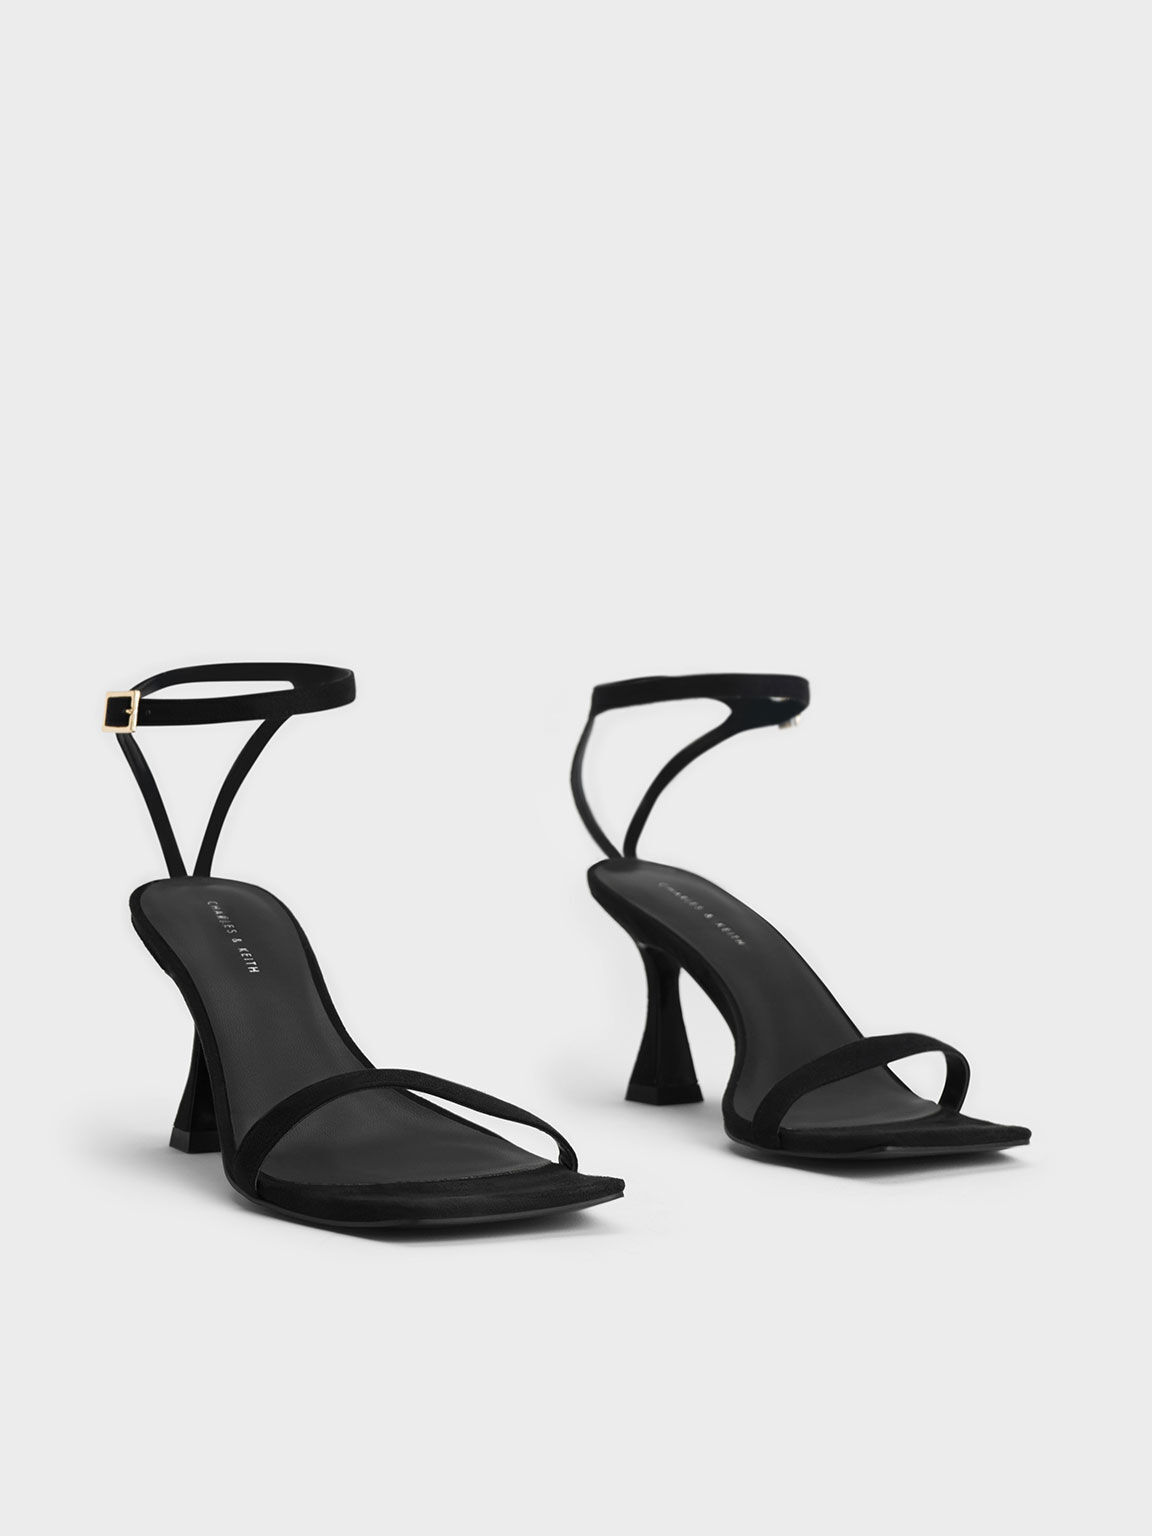 Textured Ankle-Strap Heeled Sandals, Black, hi-res